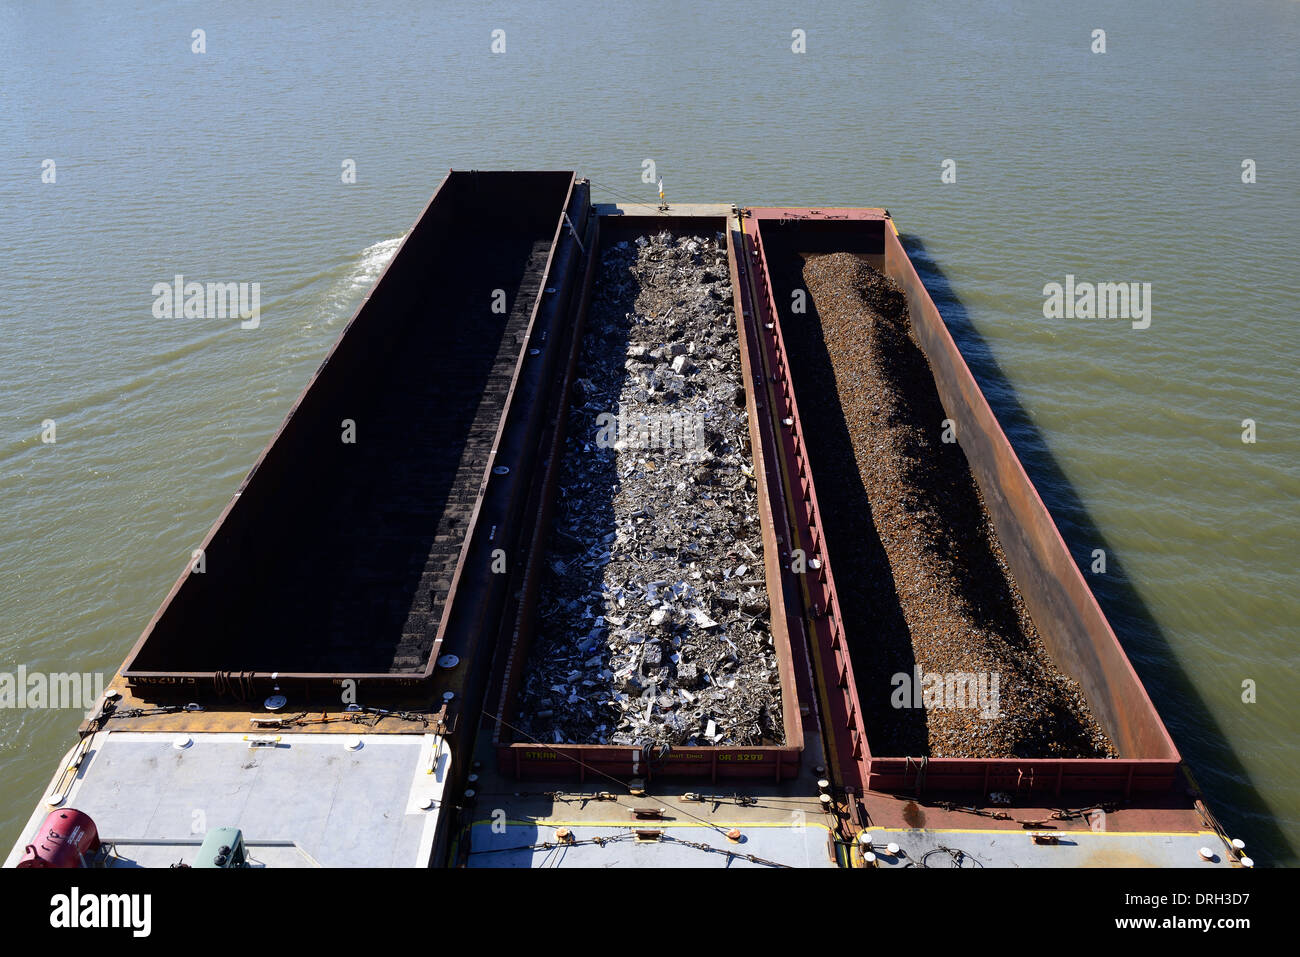 Une barge fluviale sur la rivière Ohio avec des tonnes de charbon, de la ferraille et fer à repasser et bien plus sur une journée ensoleillée. Banque D'Images